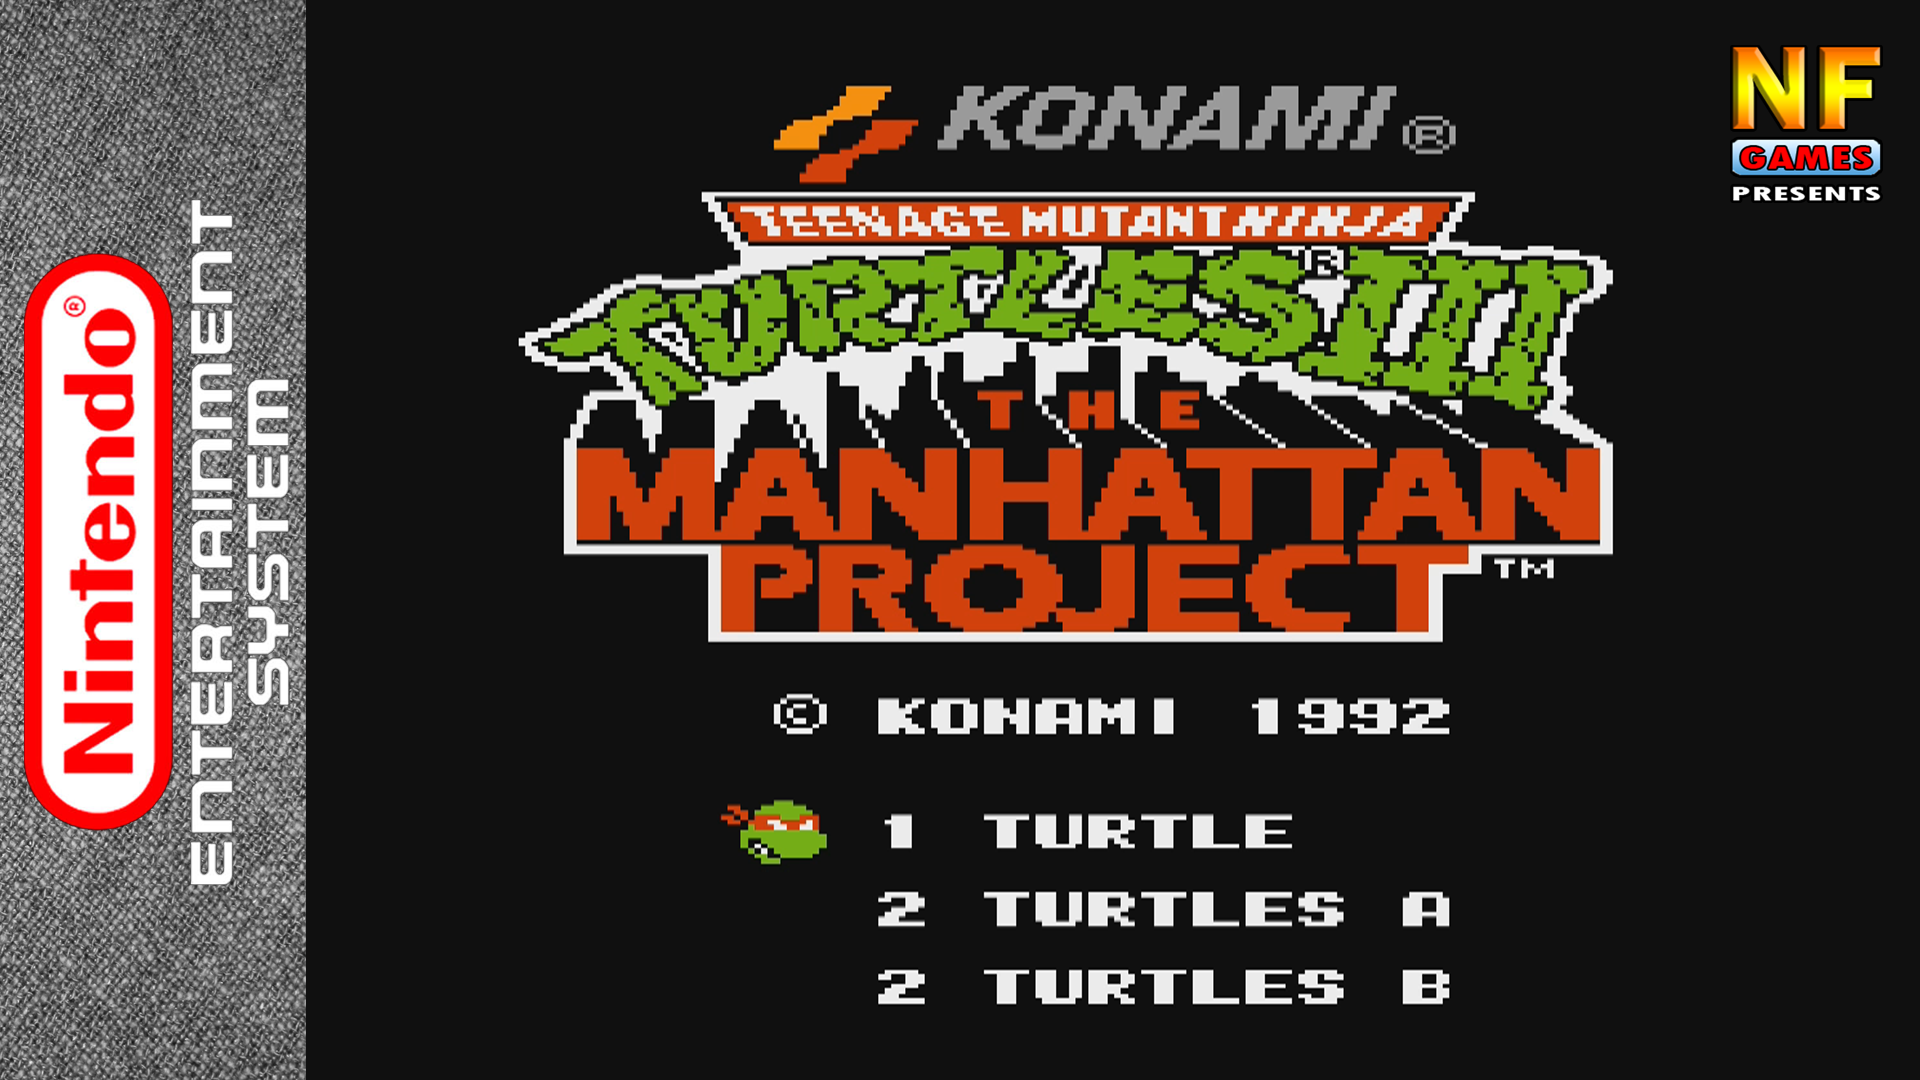 Tmnt 3 nes. Игра teenage Mutant Ninja Turtles 3 Dendy. TMNT III - Manhattan Project Dendy. Teenage Mutant Ninja Turtles 3 Mutant Nightmare ps2. TMNT 3 NES Sprite.